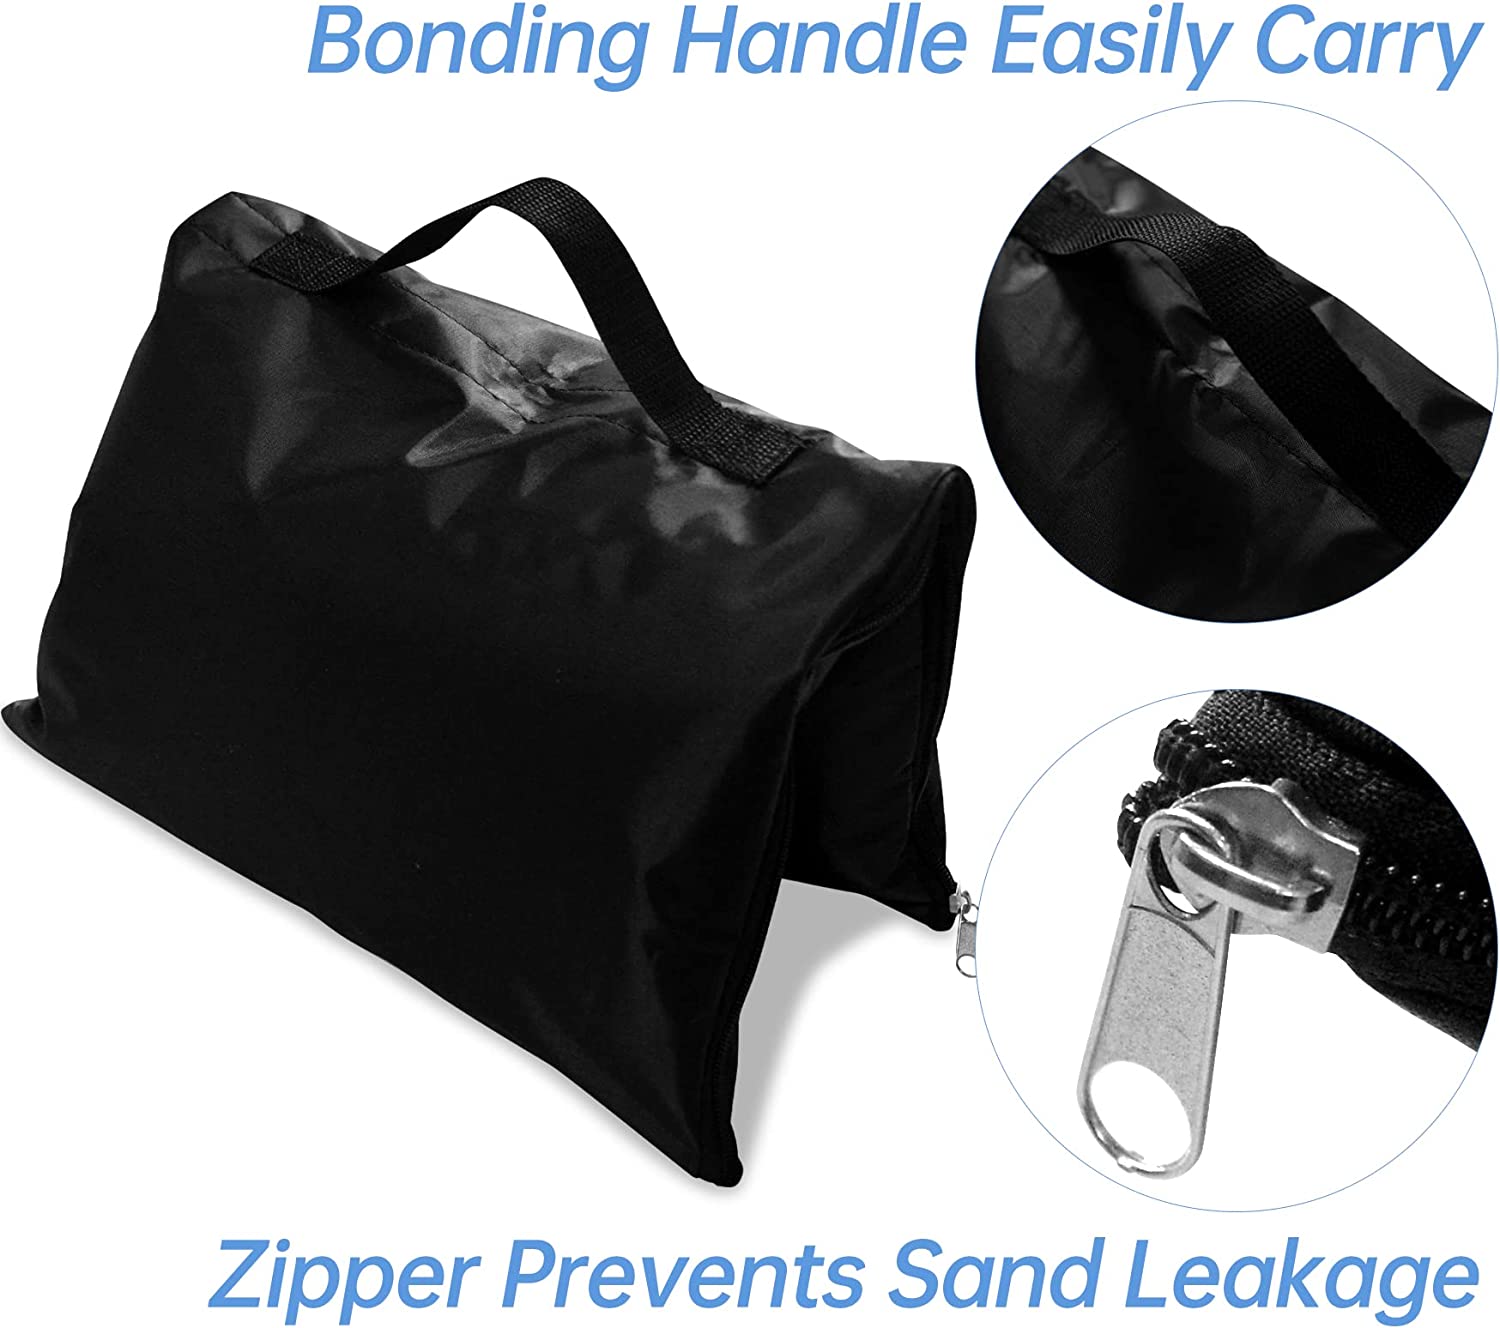 Fußballnetz-Sandsäcke, verkauft in Packungen mit 2 robusten Sandsäcken/tragbar